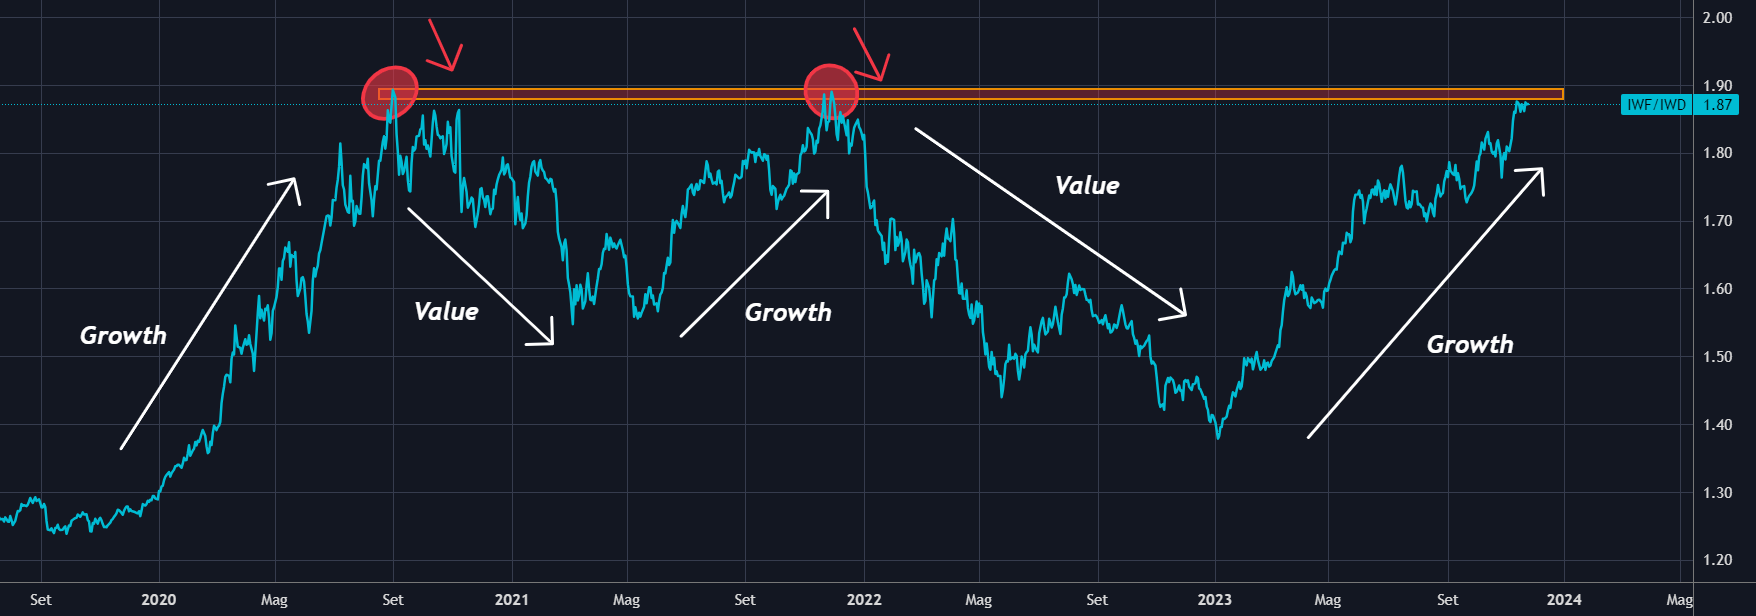 Growth vs Value Stocks